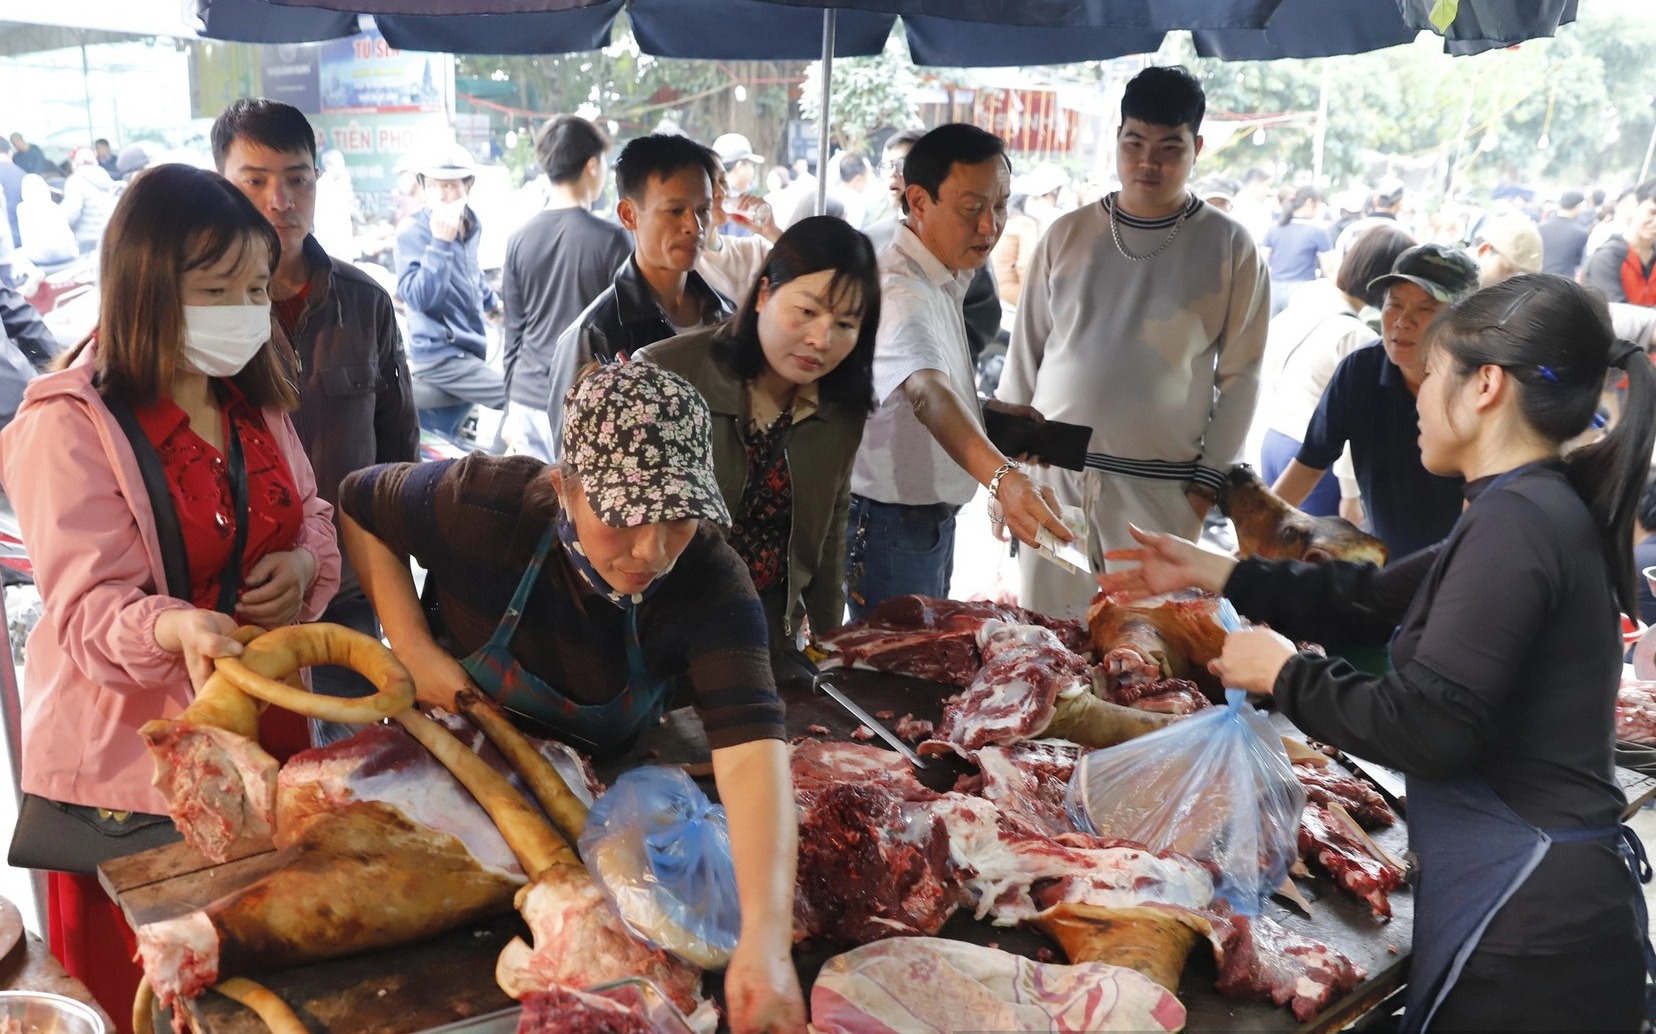 Phí đổi tiền lẻ lên tới 18%, thịt bò giá 250.000 đồng/kg tại chợ Viềng, Phủ Dầy Nam Định hút khách